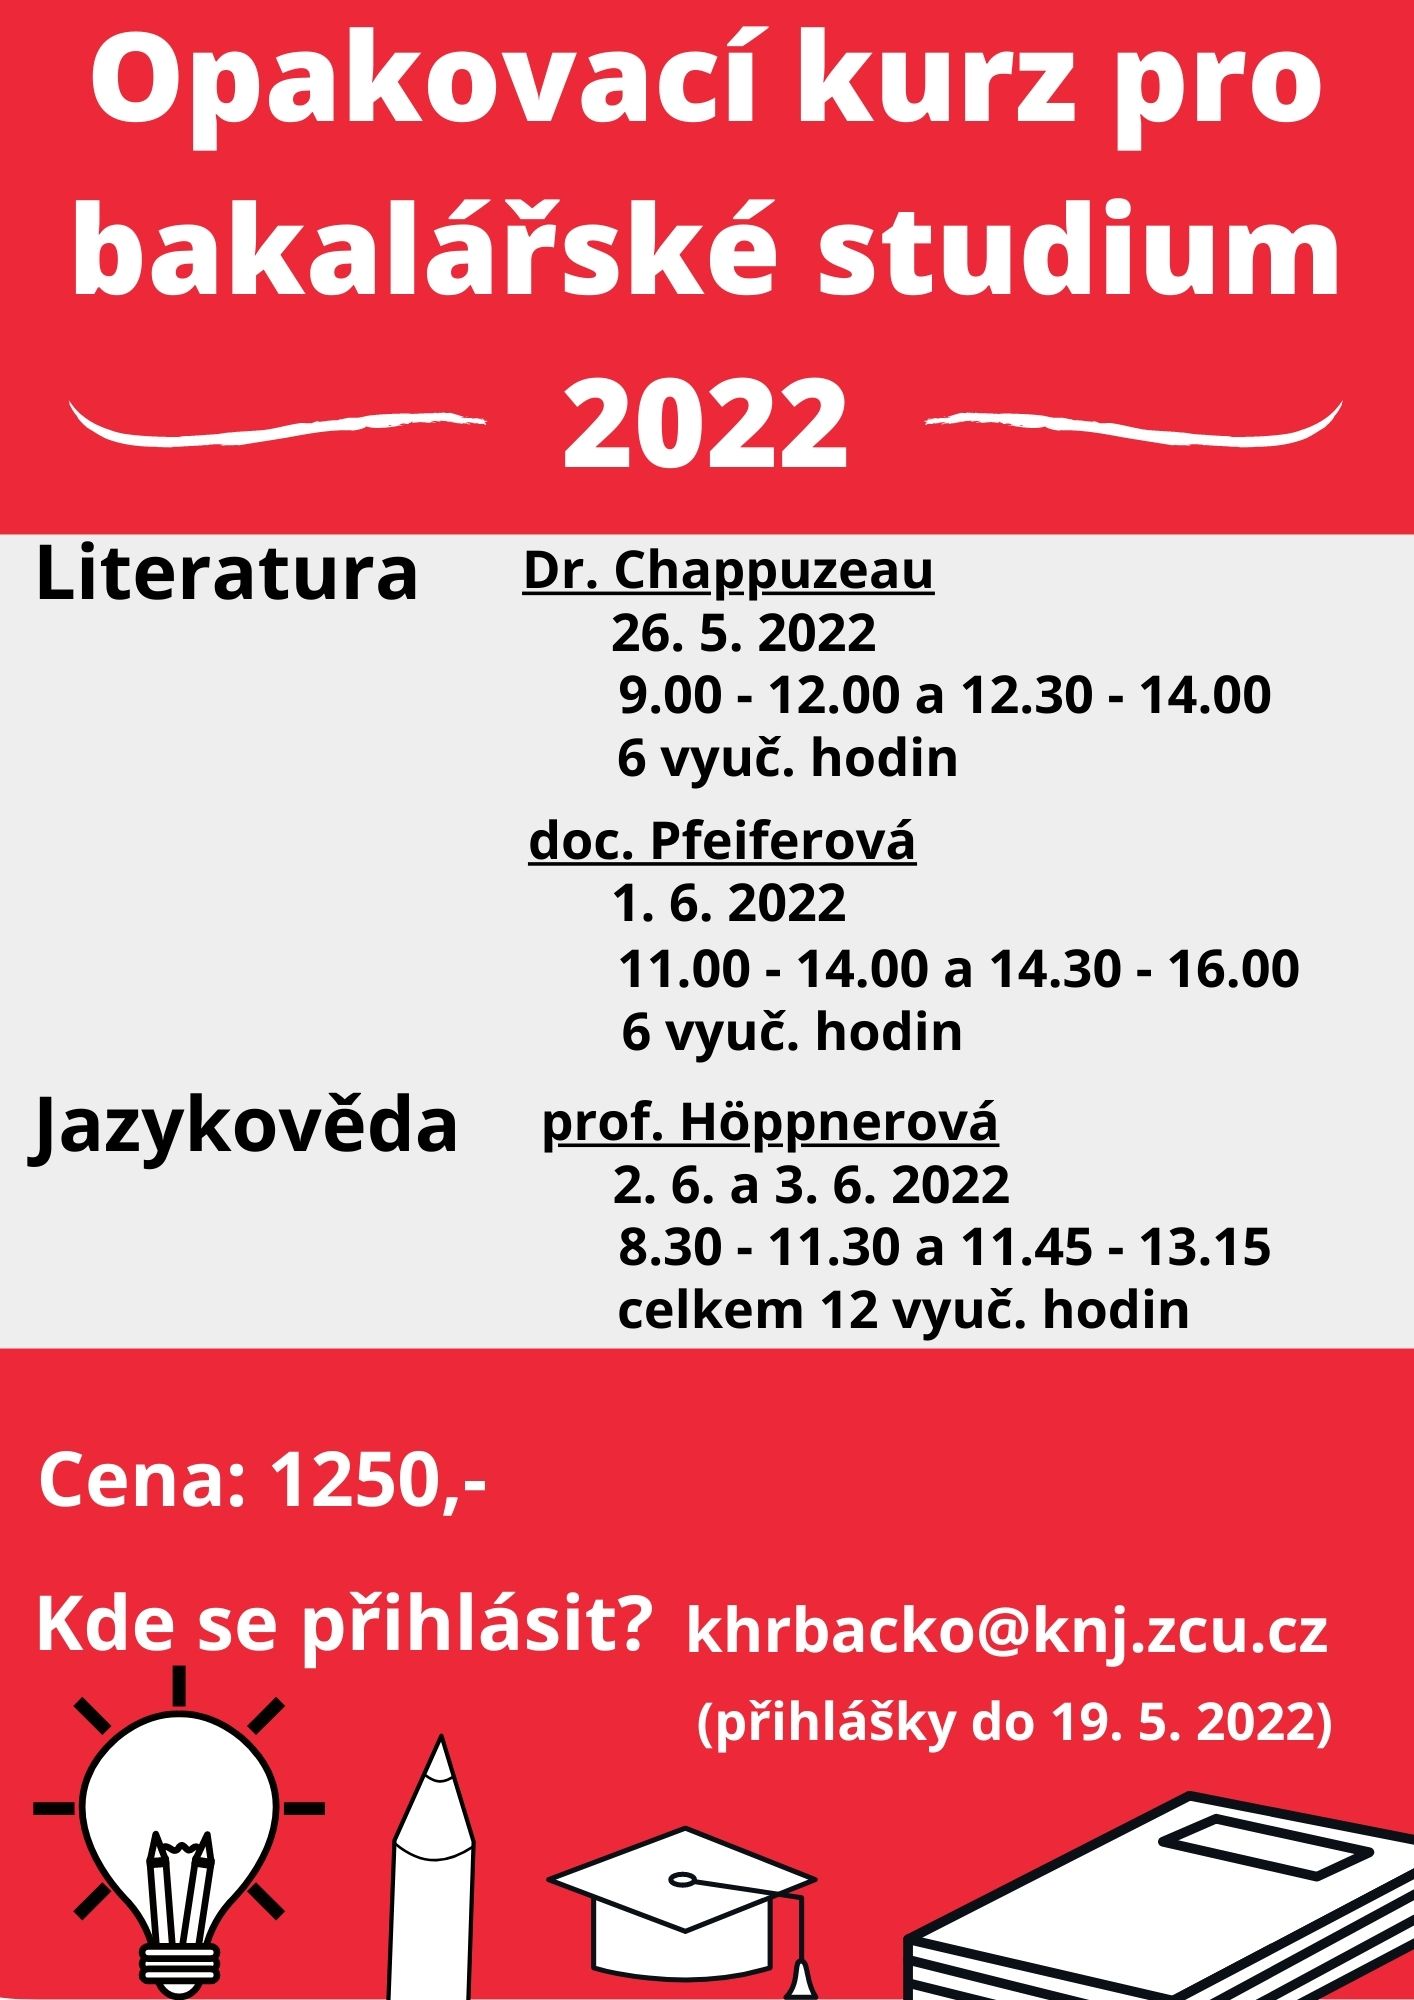 Opakovací kurz pro bakalářské studium 2022 - finální verze